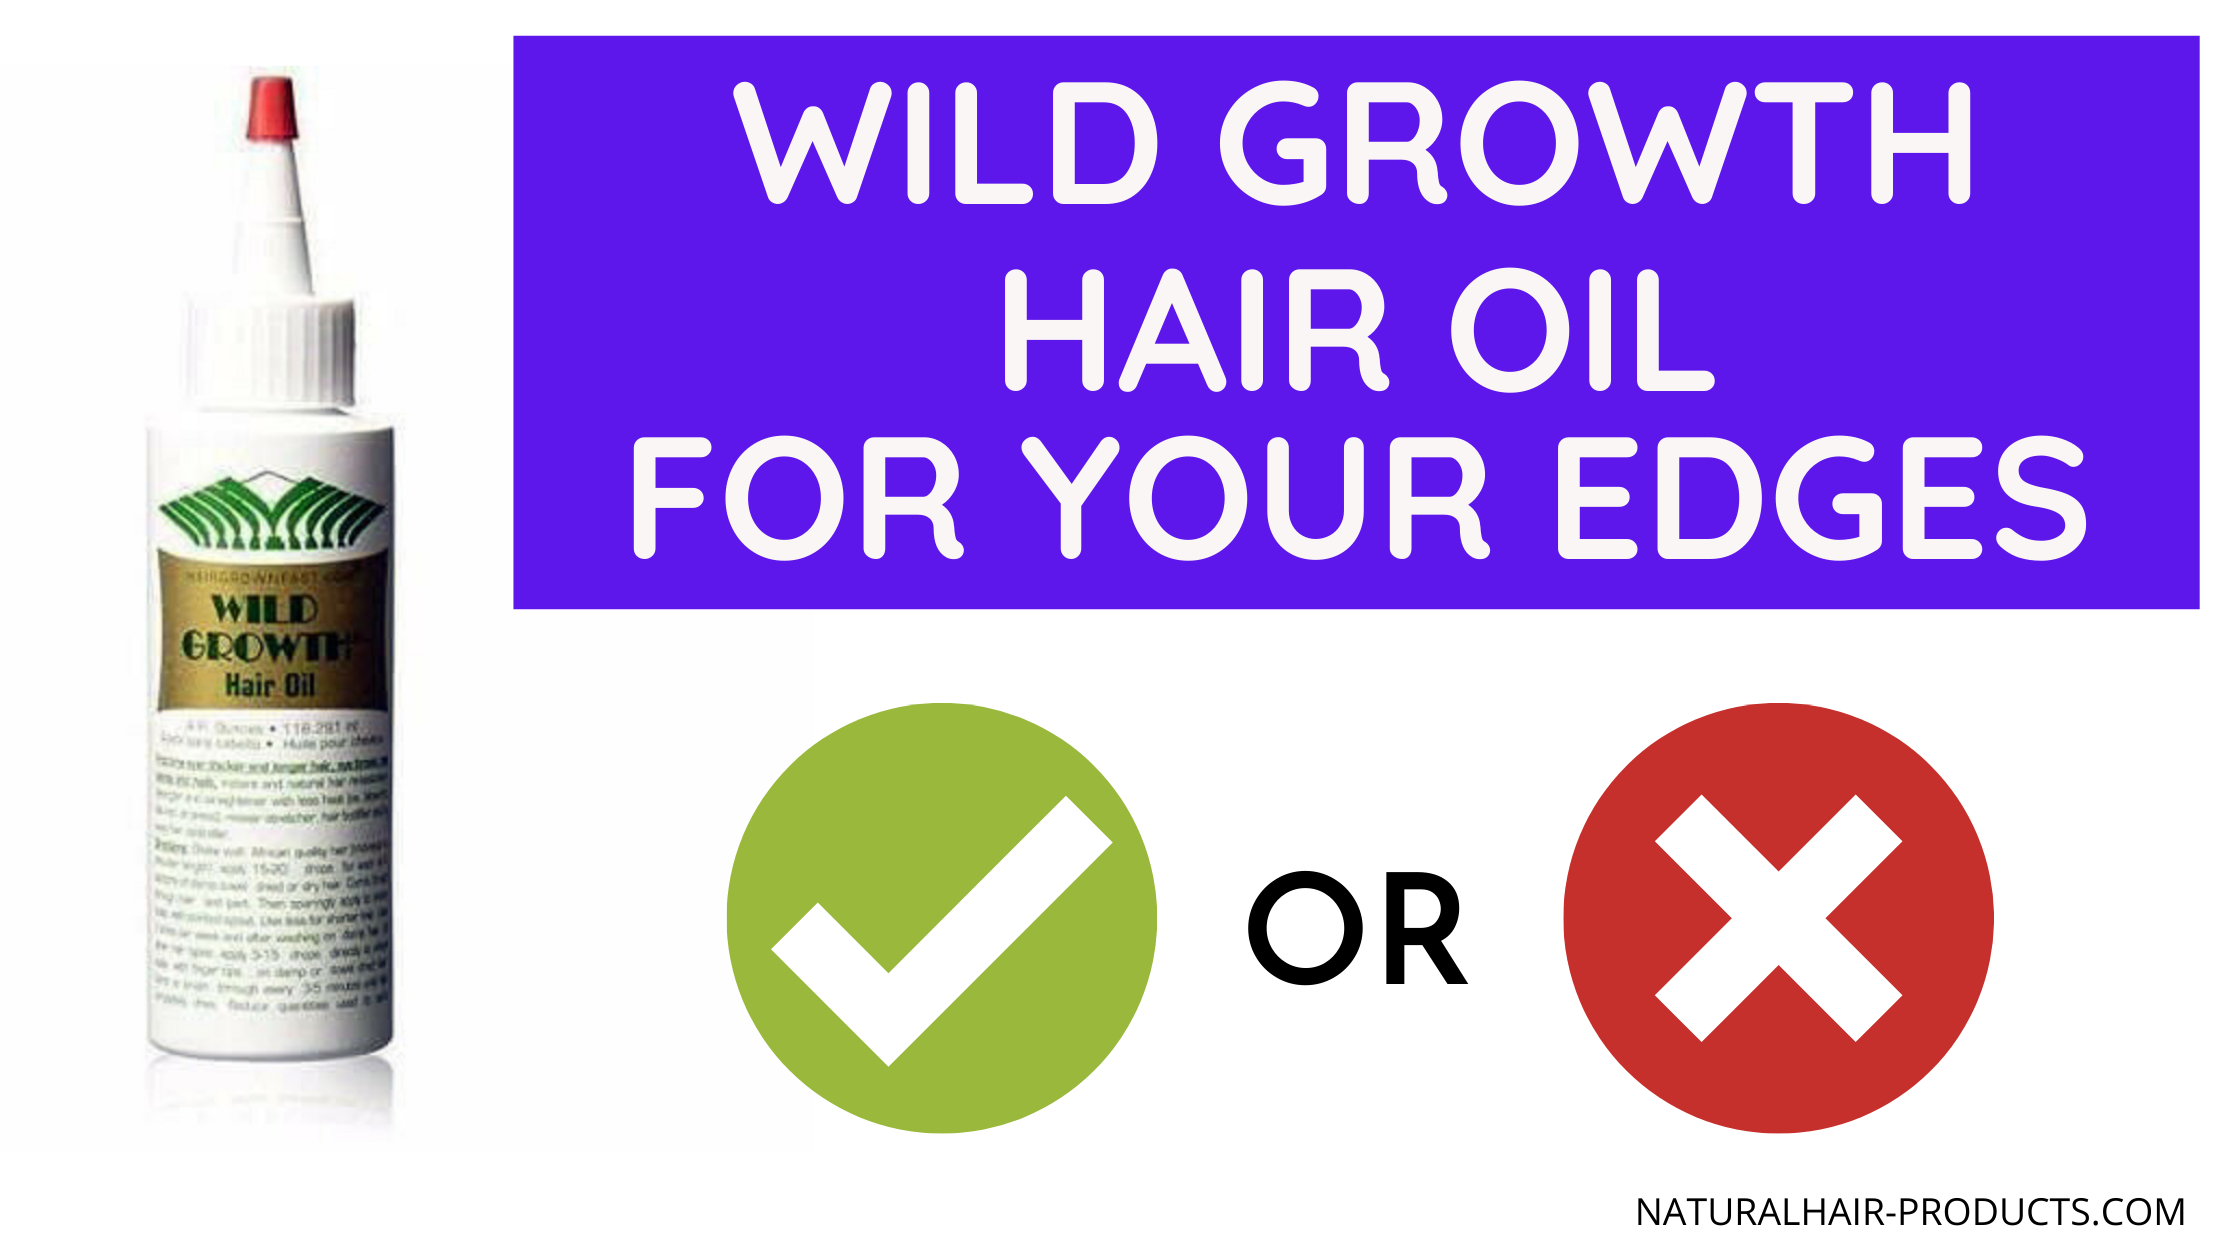 Wild Growth hair oil for edges